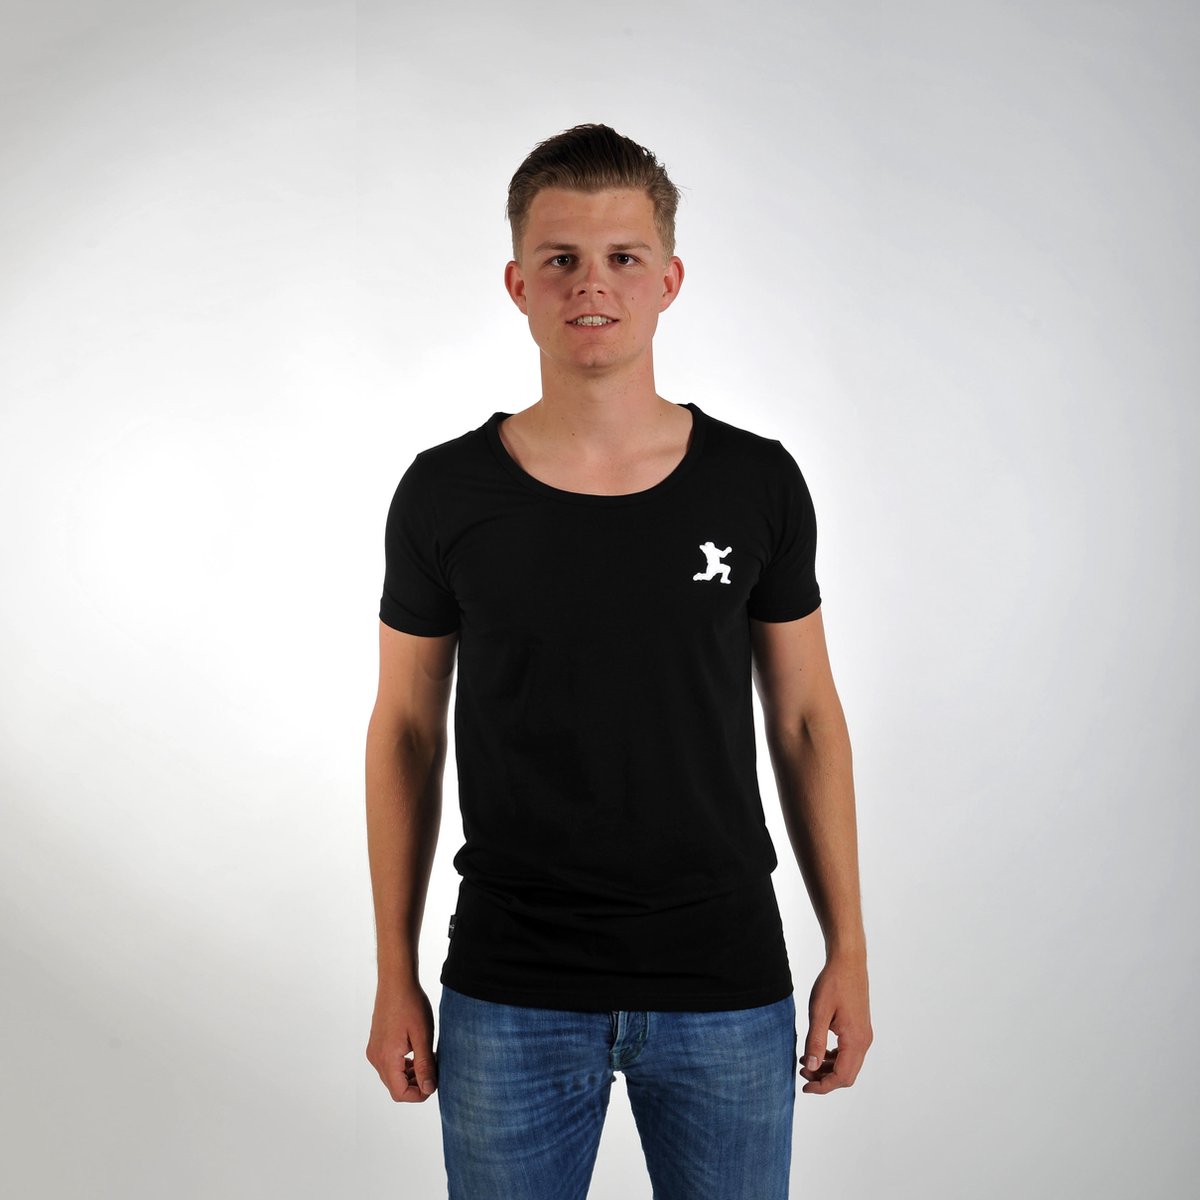 Imperatore - Andy van der Meijde t-shirt - zwart - wit logo - Maat M